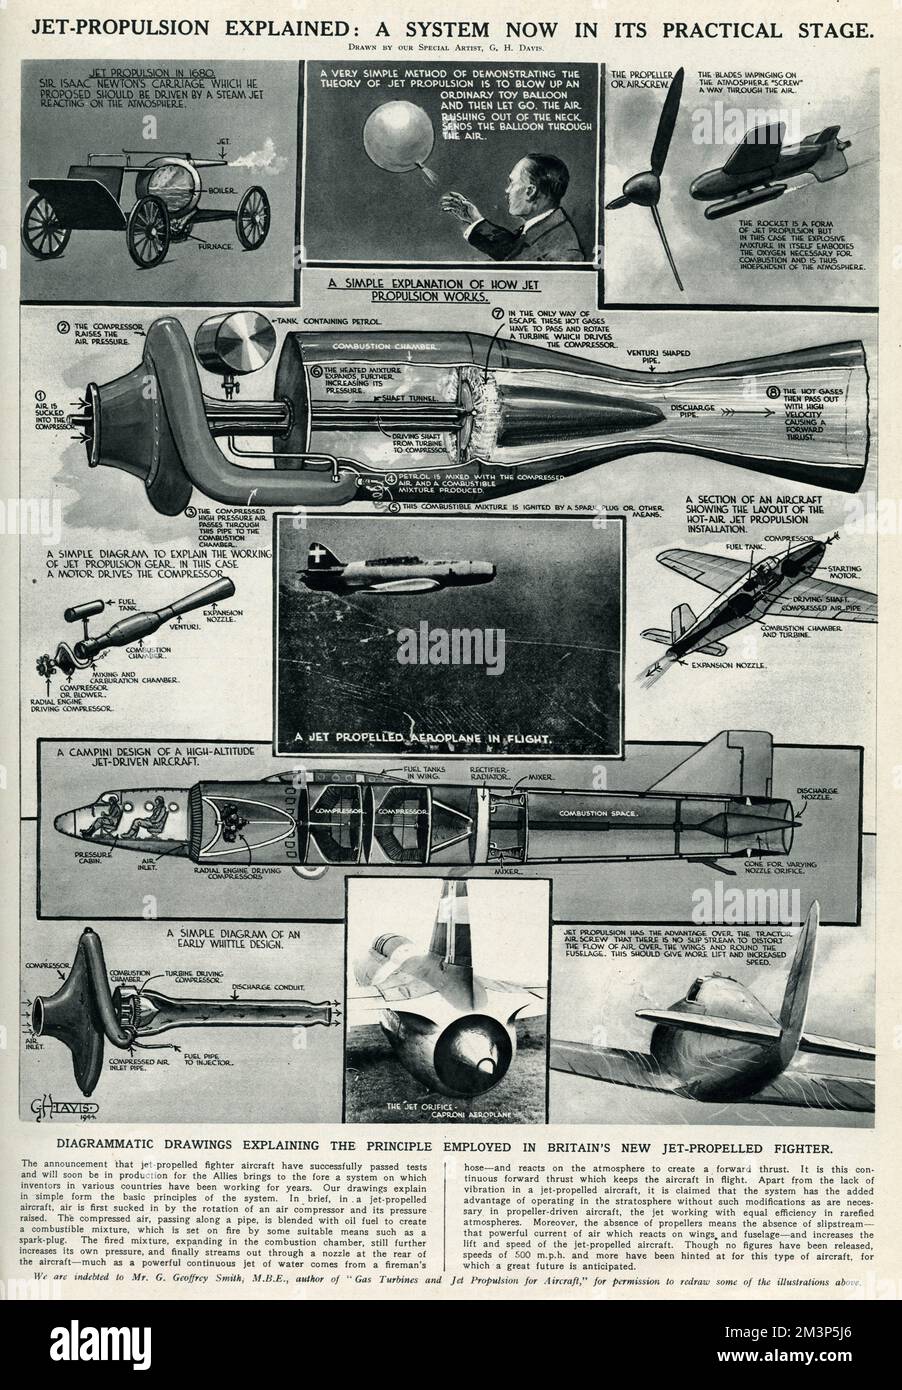 Jet-Antrieb erklärt: Ein System in seiner praktischen Phase in dieser Phase des Zweiten Weltkriegs. Zeichnungen zur Erläuterung des in Großbritanniens neuem Kampfflugzeug mit Jet-Antrieb angewandten Prinzips. Stockfoto